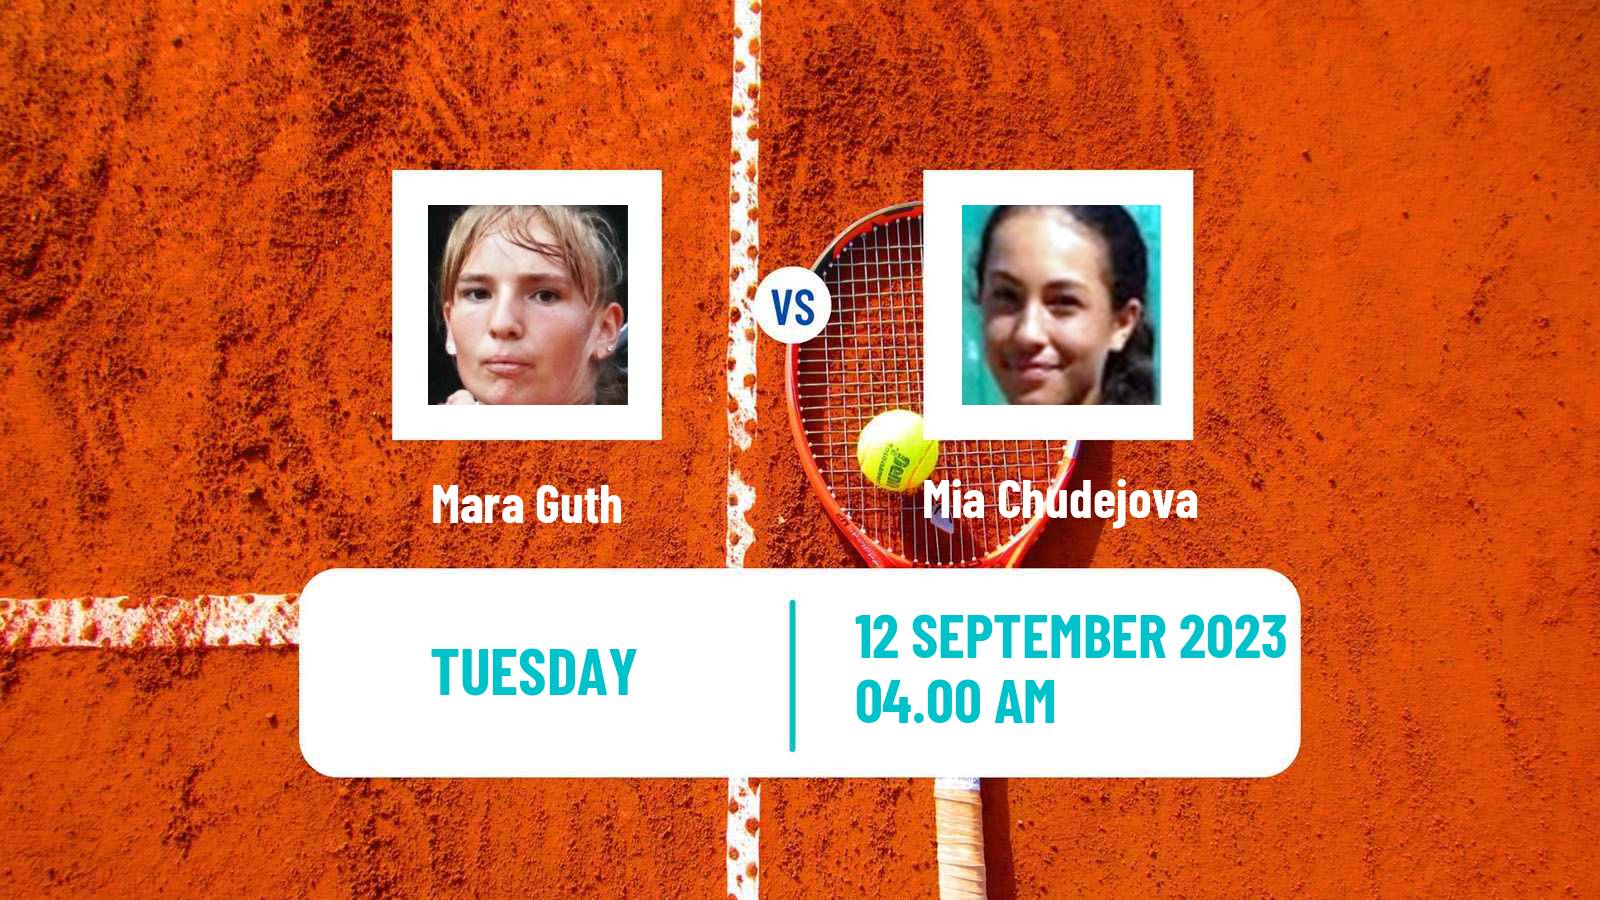 Tennis ITF W15 Kursumlijska Banja 10 Women Mara Guth - Mia Chudejova